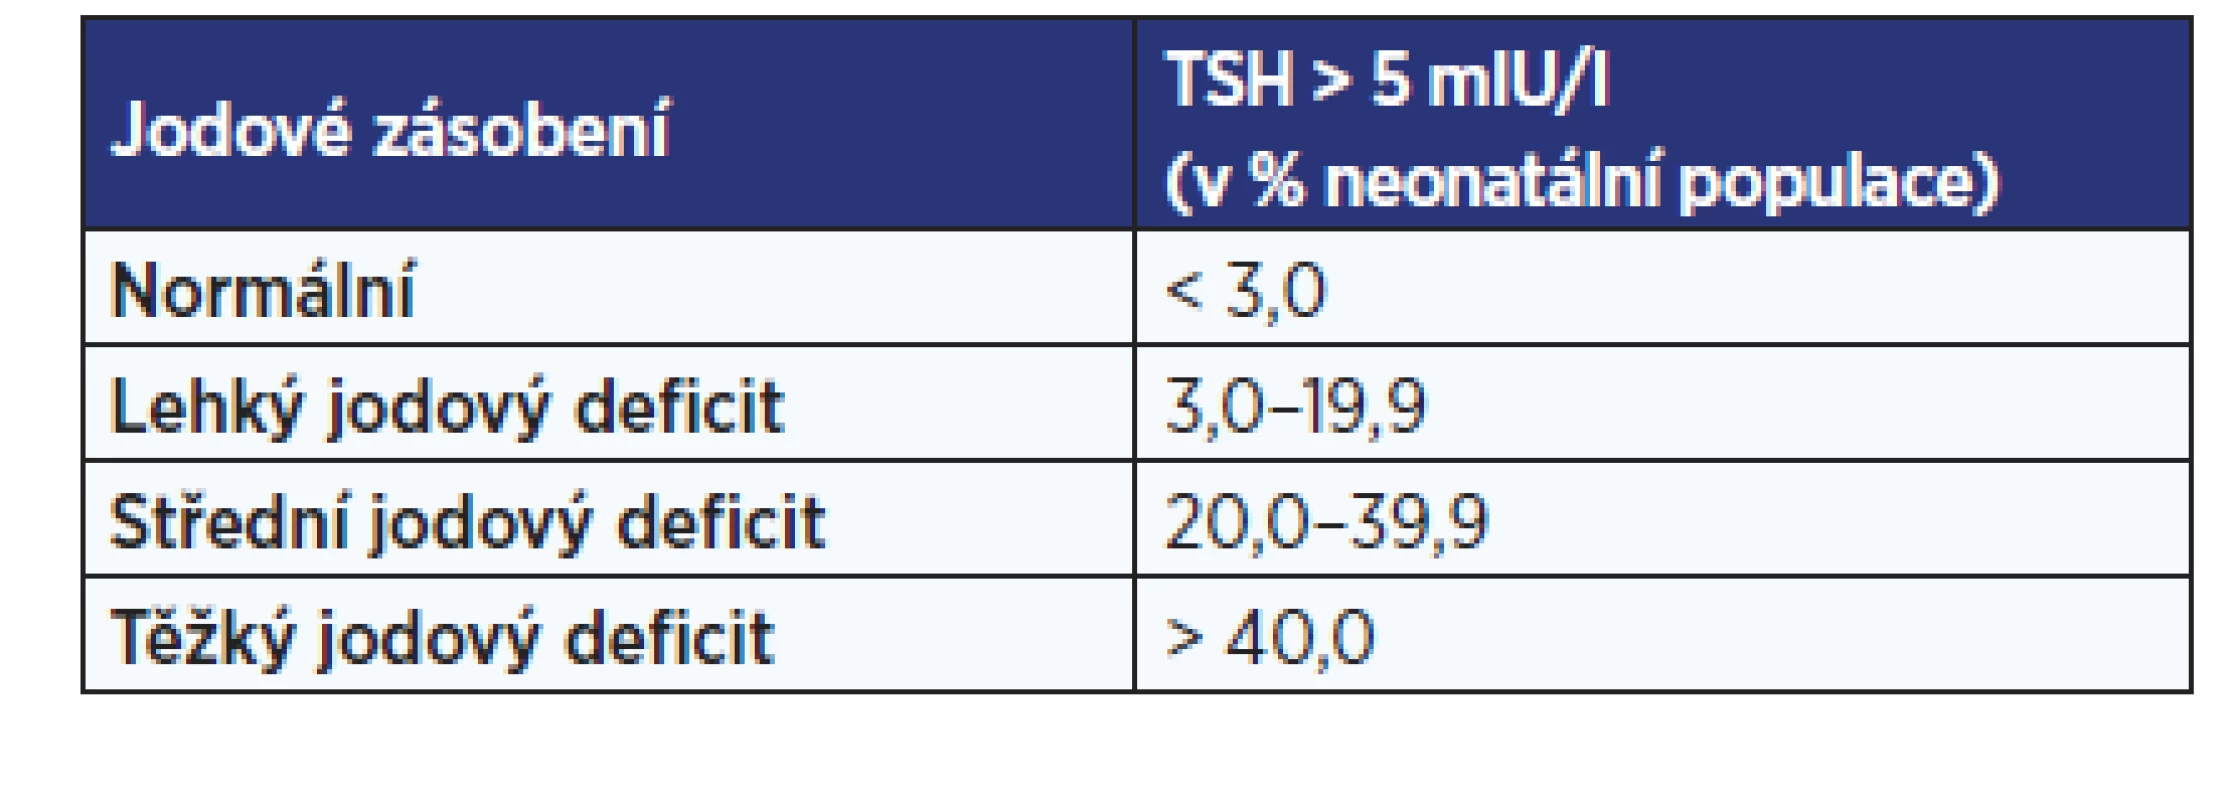 Hodnocení stupně jodového deficitu v populaci podle
hodnot neonatálního TSH